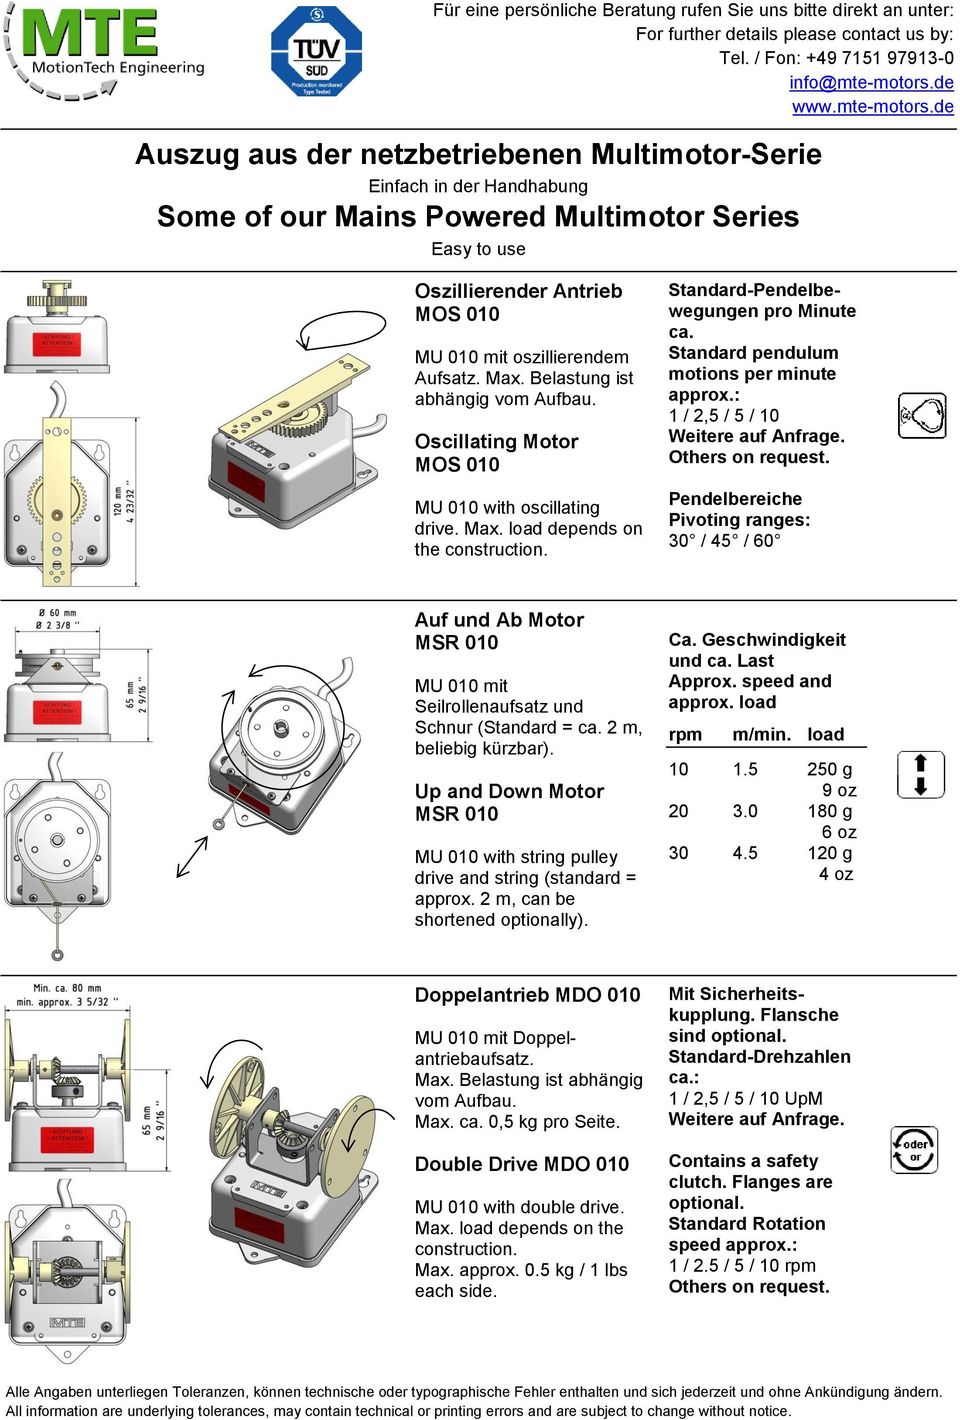 Standard pendulum motions per minute 1 / 2,5 / 5 / 10 Pendelbereiche Pivoting ranges: 30 / 45 / 60 Auf und Ab Motor MSR 010 MU 010 mit Seilrollenaufsatz und Schnur (Standard = ca.